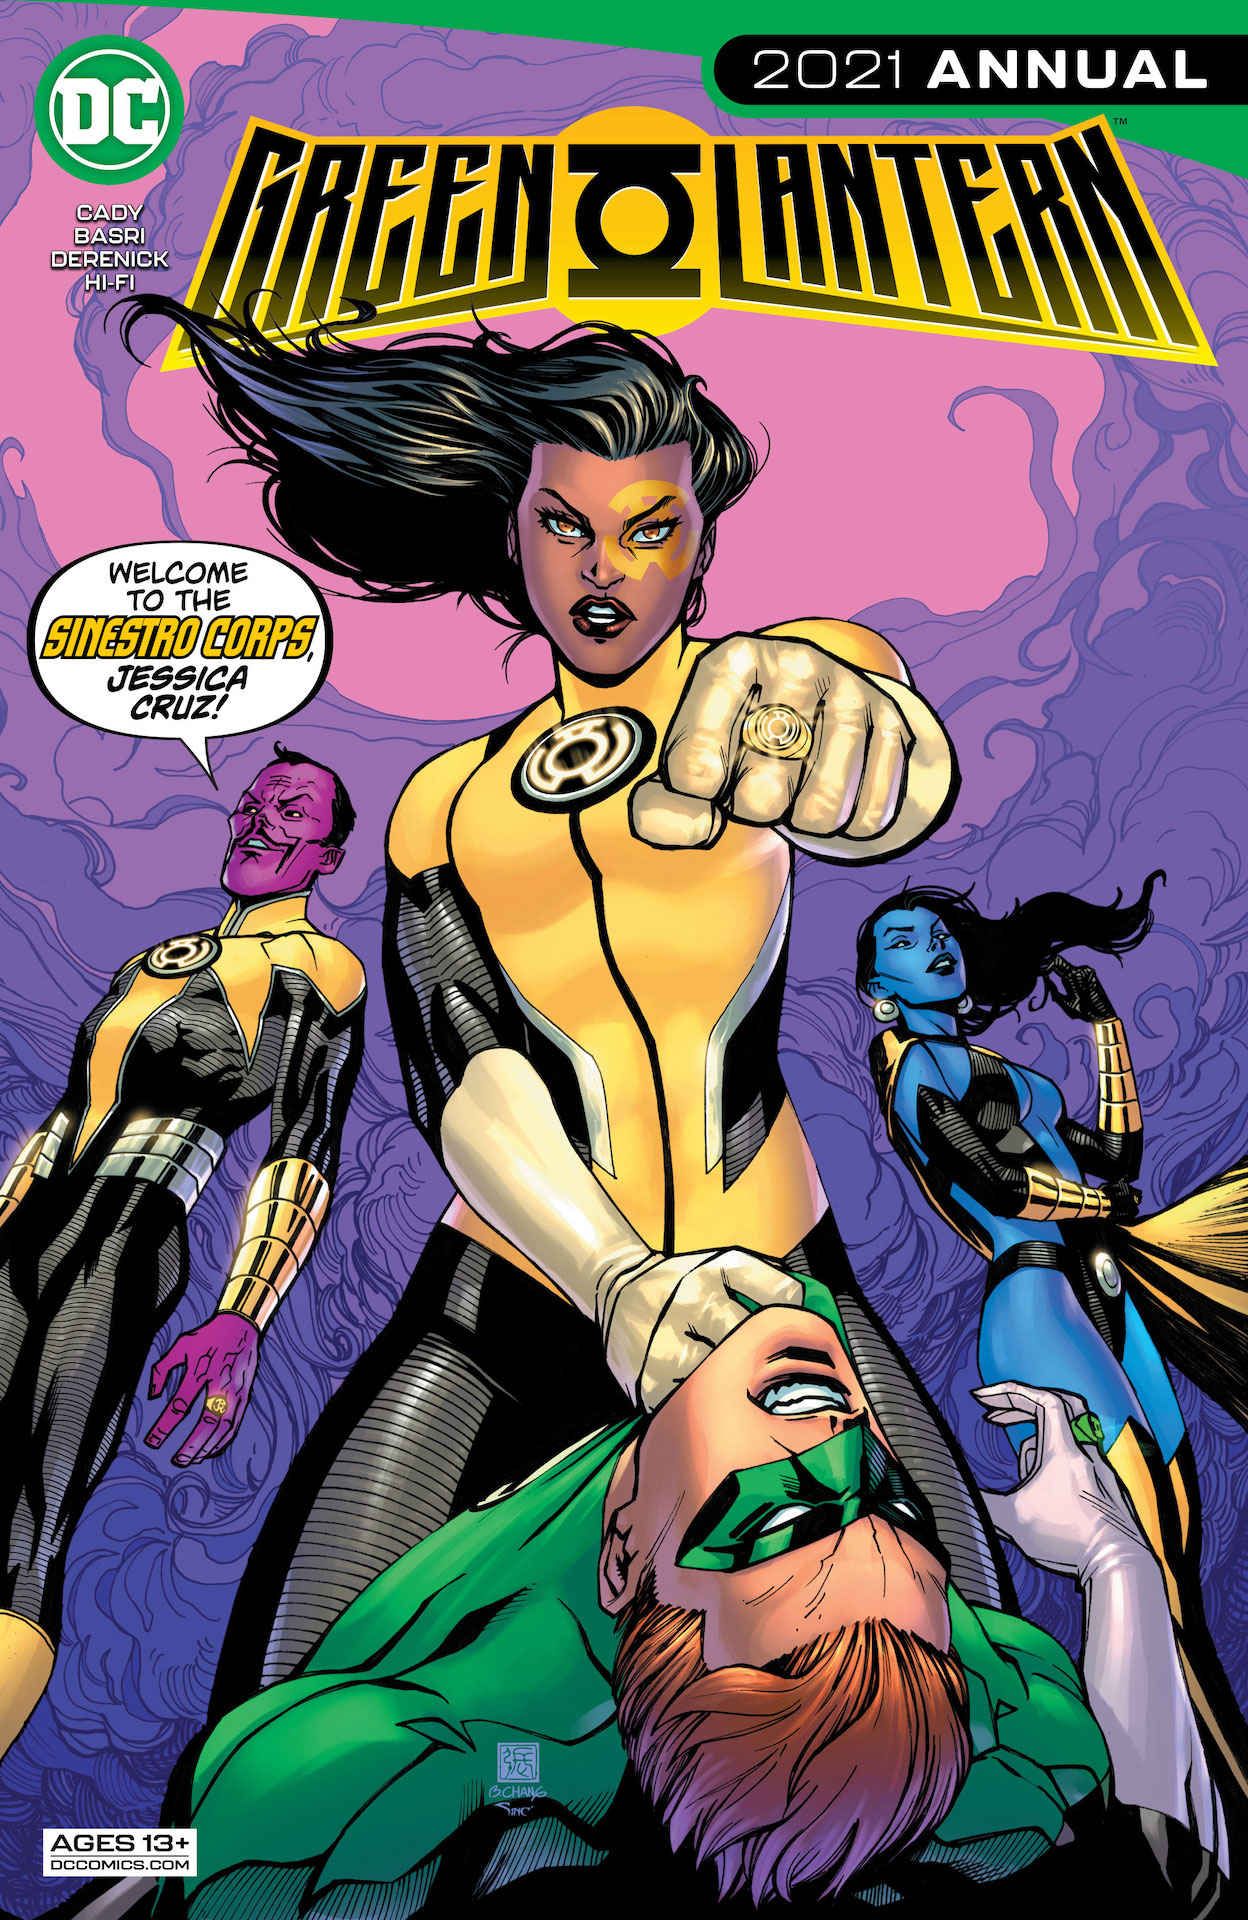 DC Preview: Green Lantern 2021 Annual #1